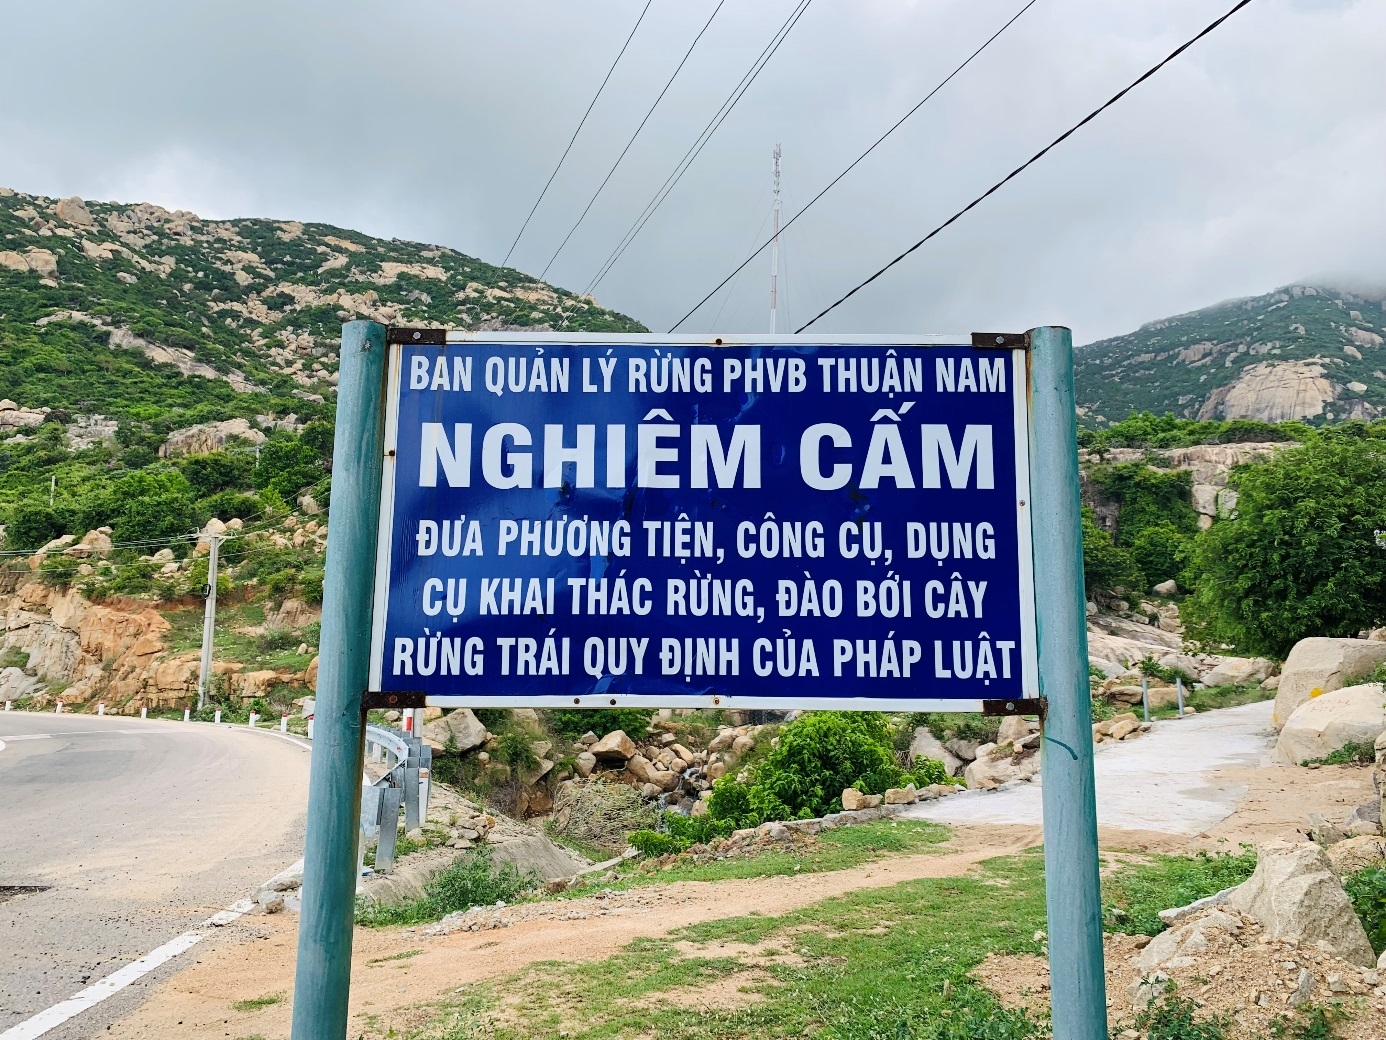 “Cung đường bằng lăng tím” – điểm check-in đang “HOT” tại Ninh Thuận